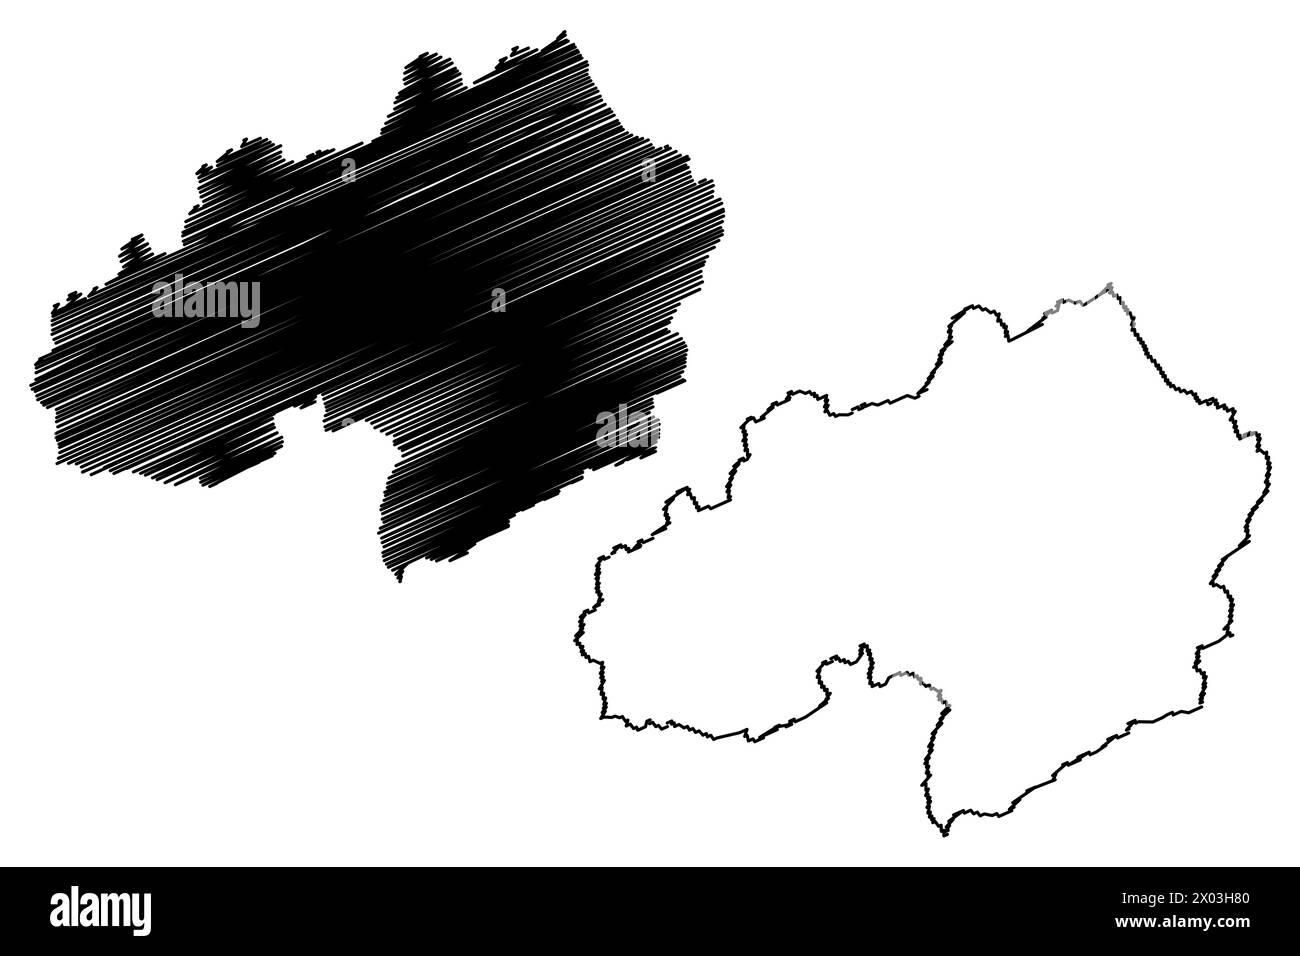 District de Surselva (Suisse, Confédération suisse, canton des Grisons, Graubünden ou Graubunden) illustration vectorielle de carte, croquis de griffonnage Surselva Re Illustration de Vecteur